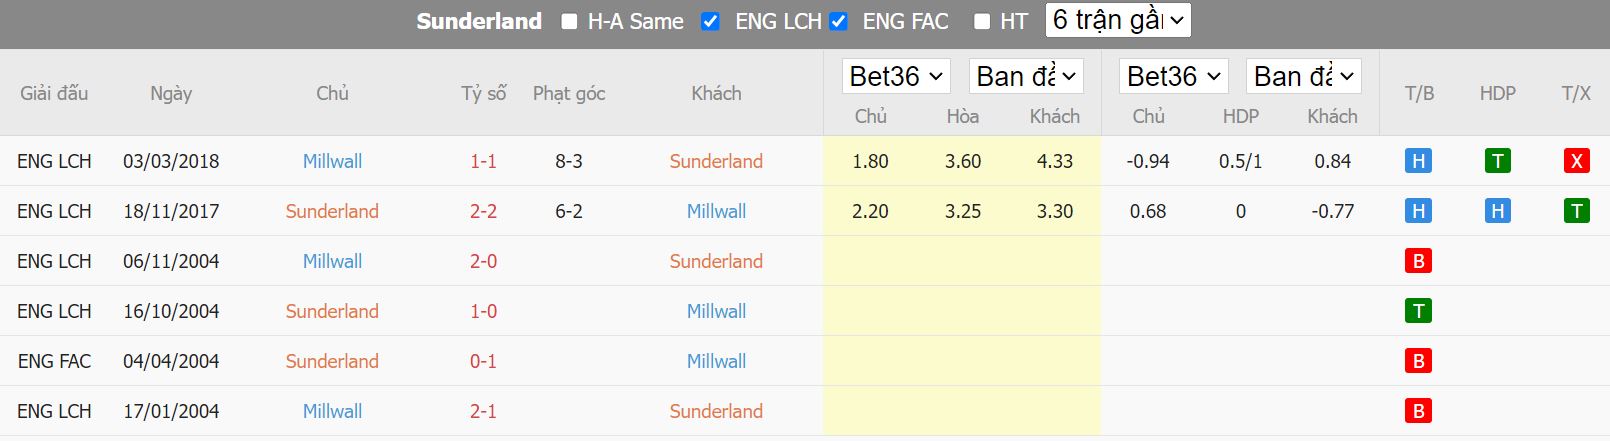 Nhận định Sunderland vs Millwall, 19h30 ngày 3/12, hạng nhất Anh - Ảnh 3